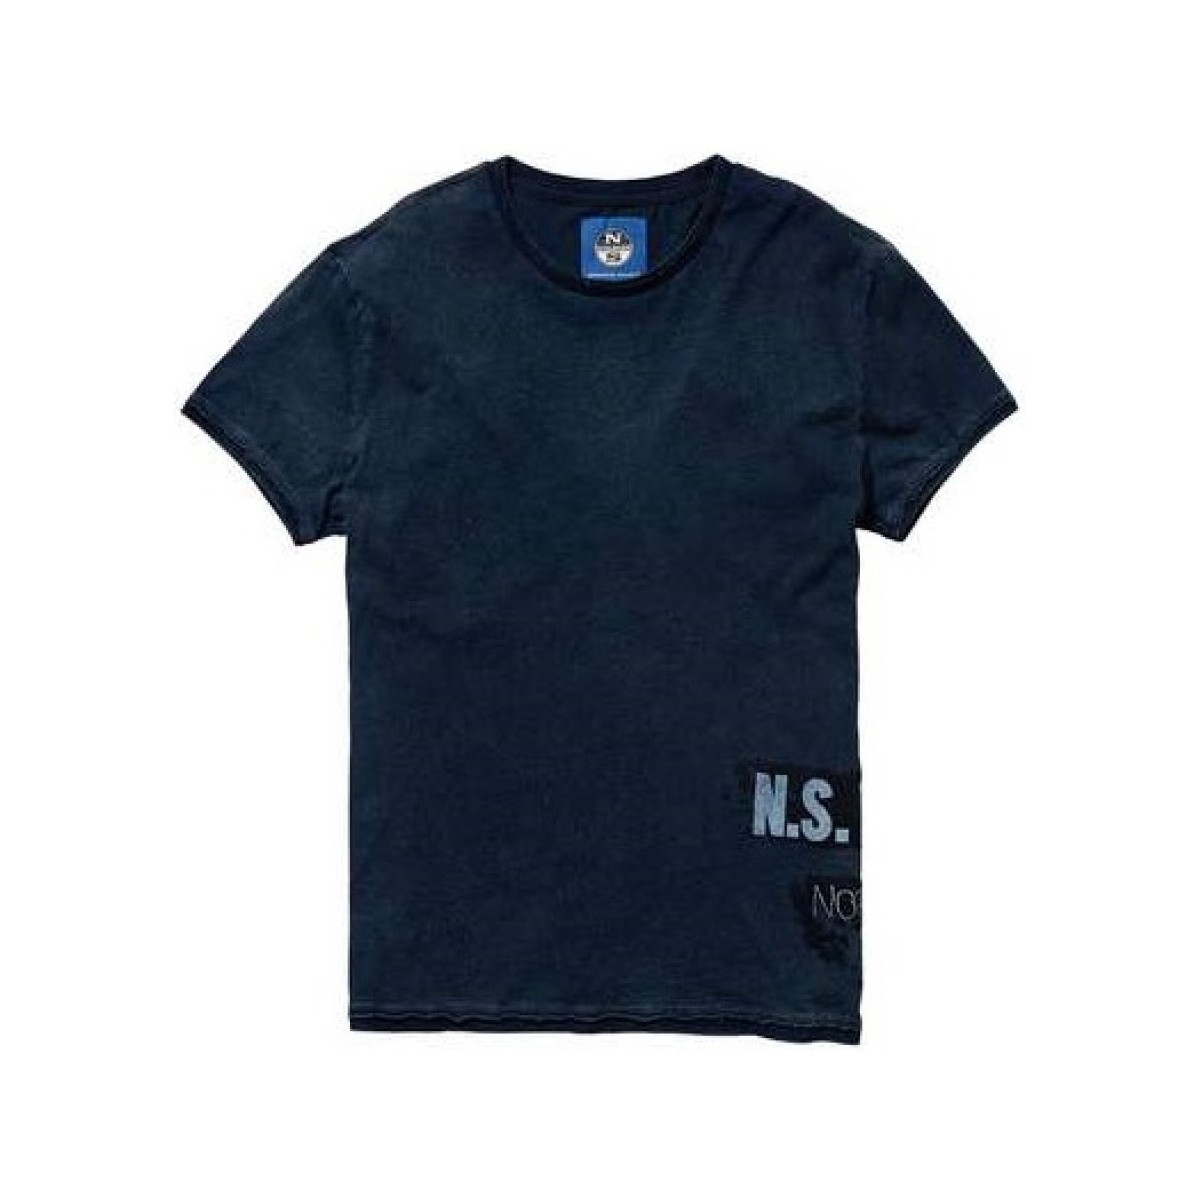 Abbigliamento Uomo T-shirt maniche corte North Sails T-Shirt Uomo Indigo Blu